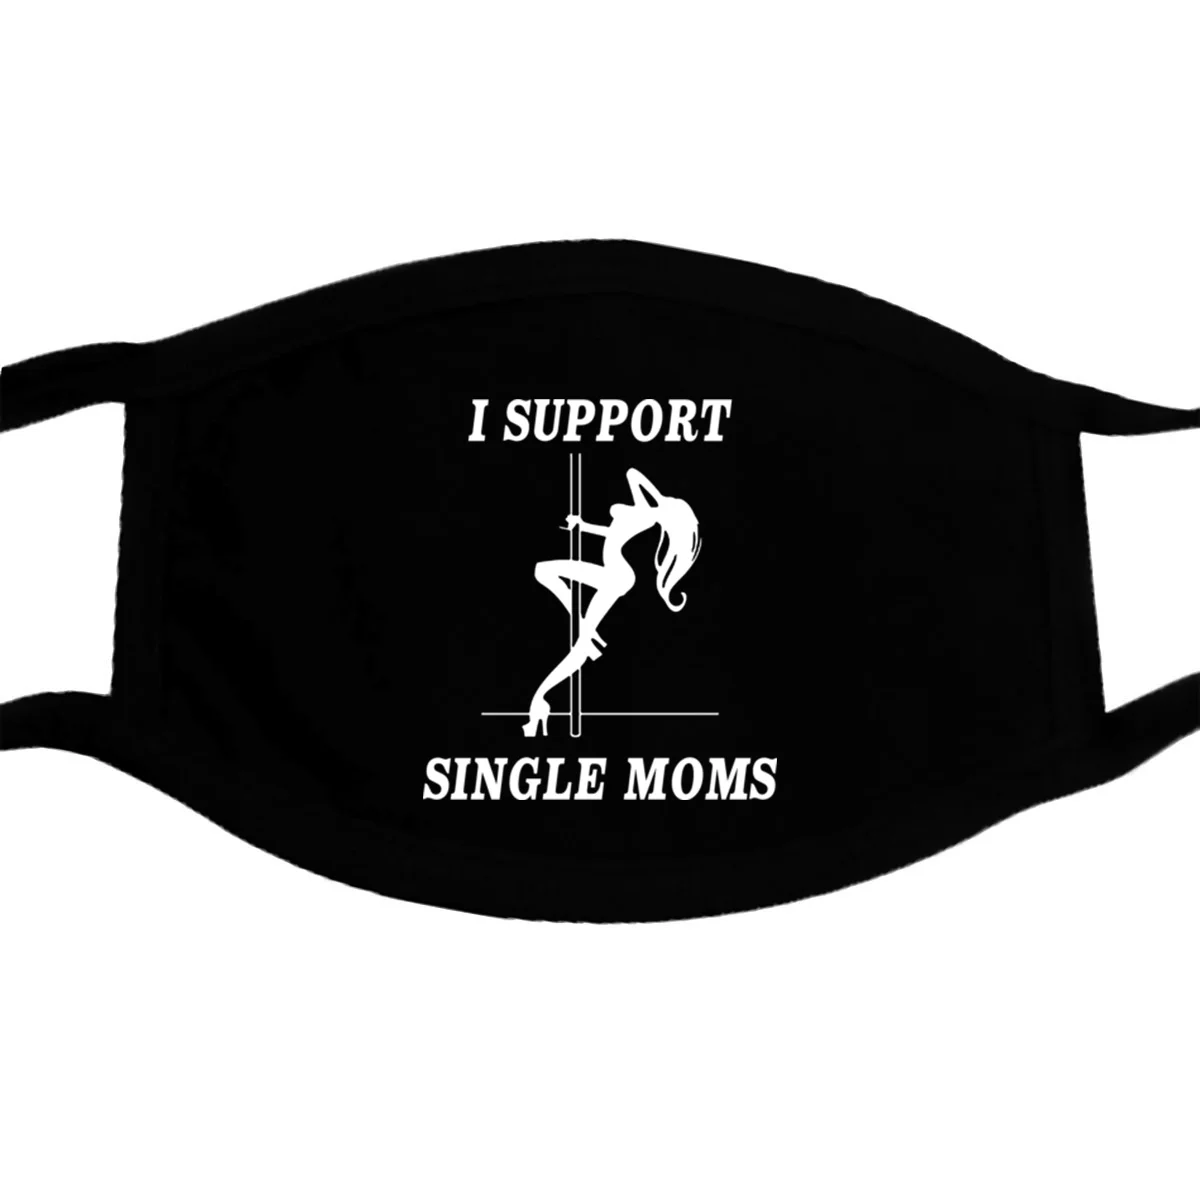 Støtte Enlige Mødre Stripper Sjove Maske